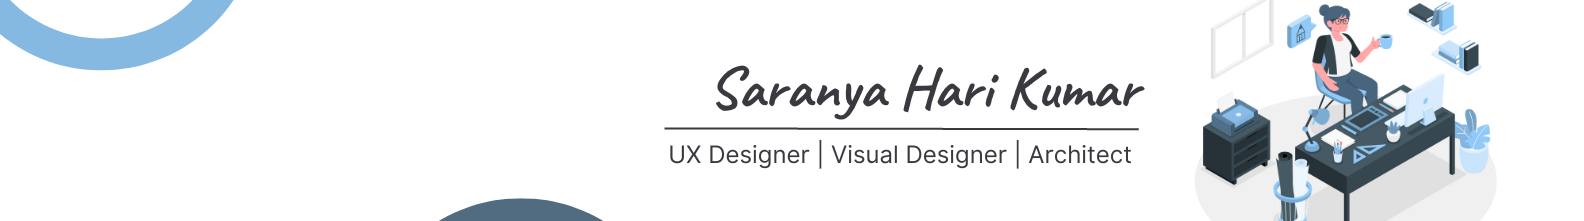 SARANYA HARI KUMAR's profile banner